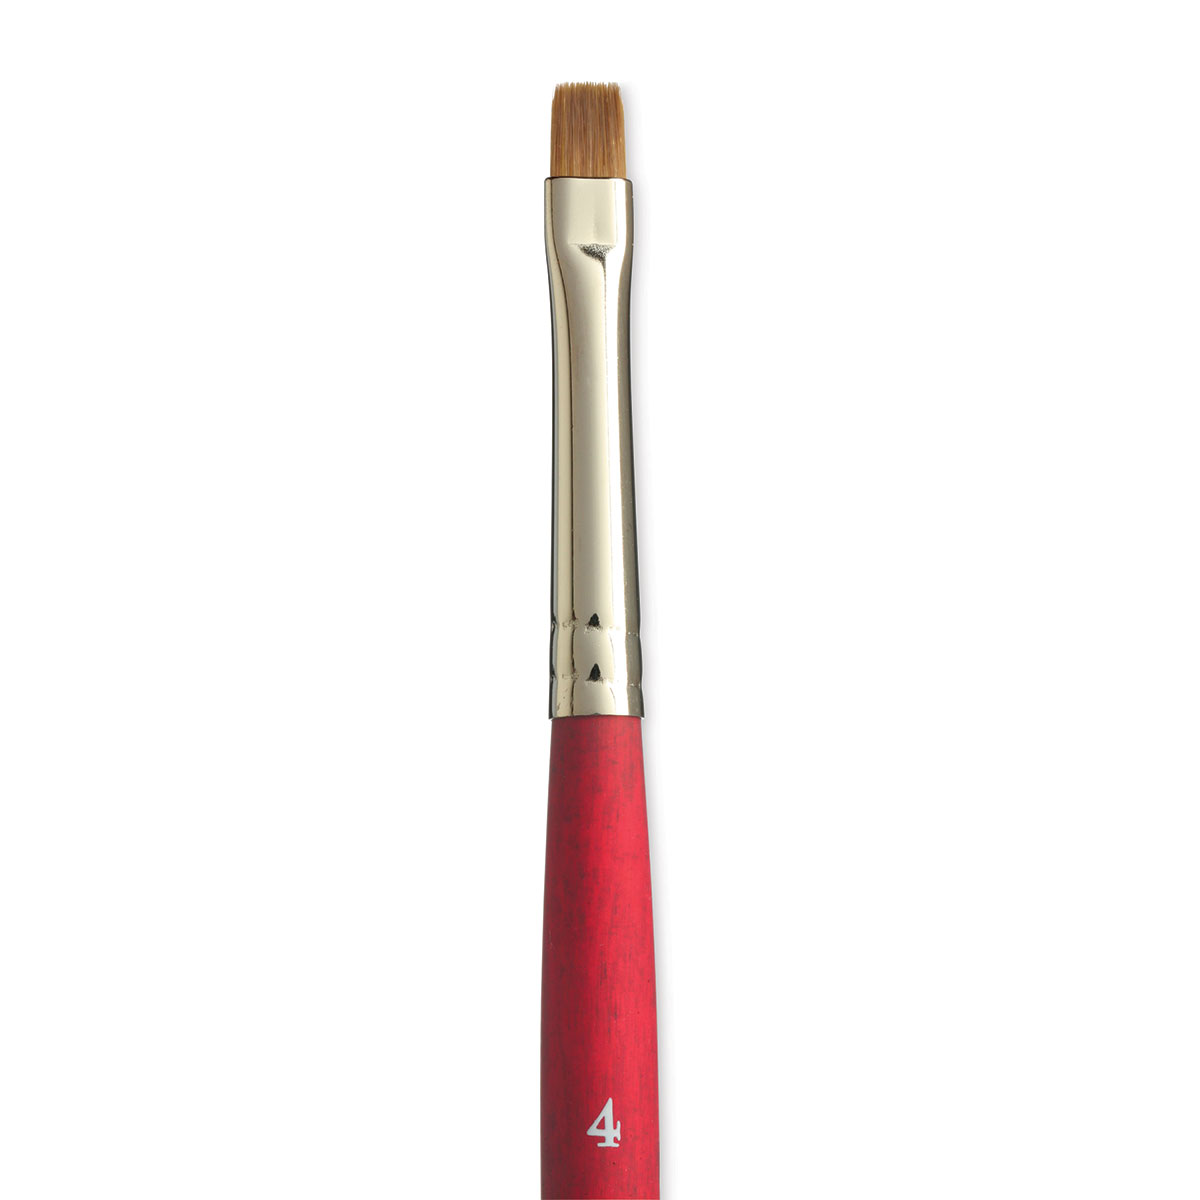 Princeton™ Velvetouch™ Series 3950 Stroke Brush